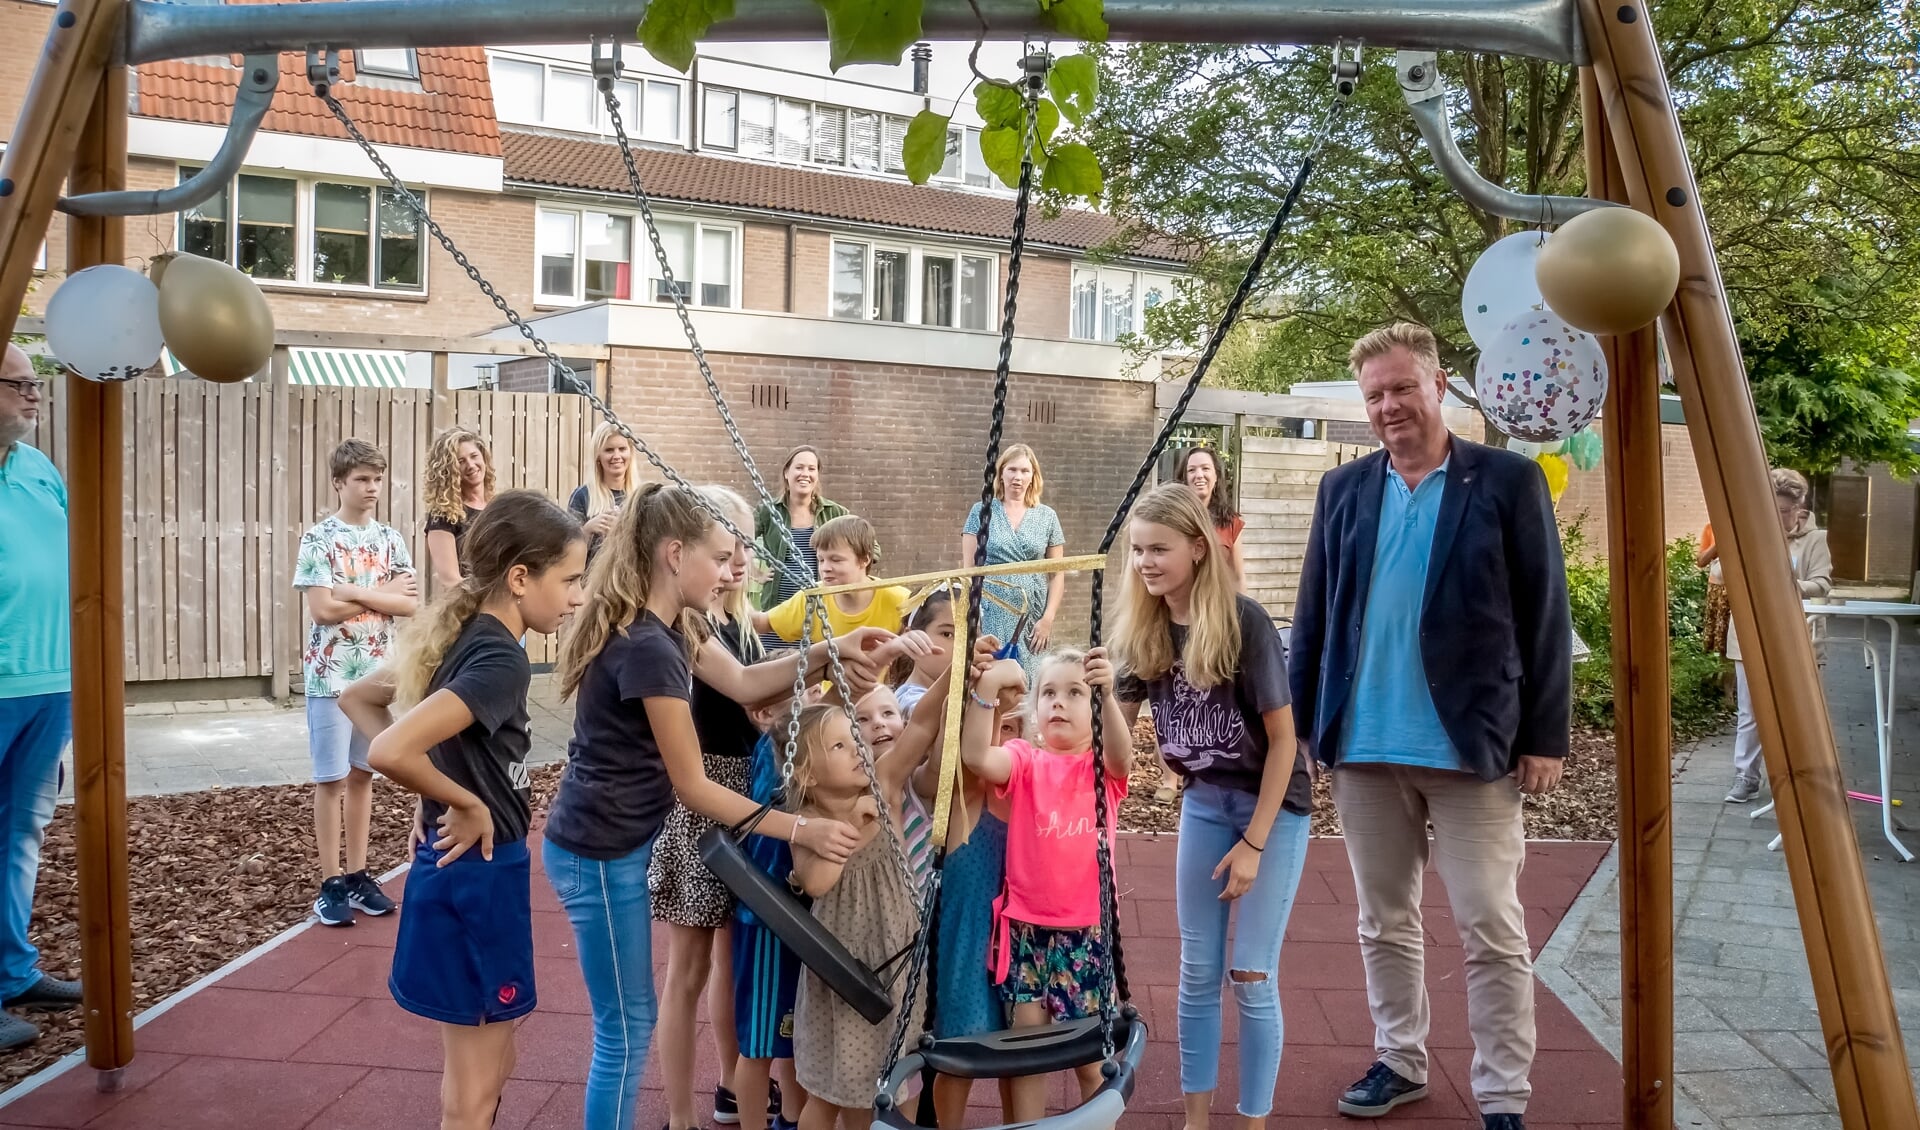 Wethouder Rik van Woudenberg kijkt toe hoe kinderen uit de buurt hun speeltuin openen. 